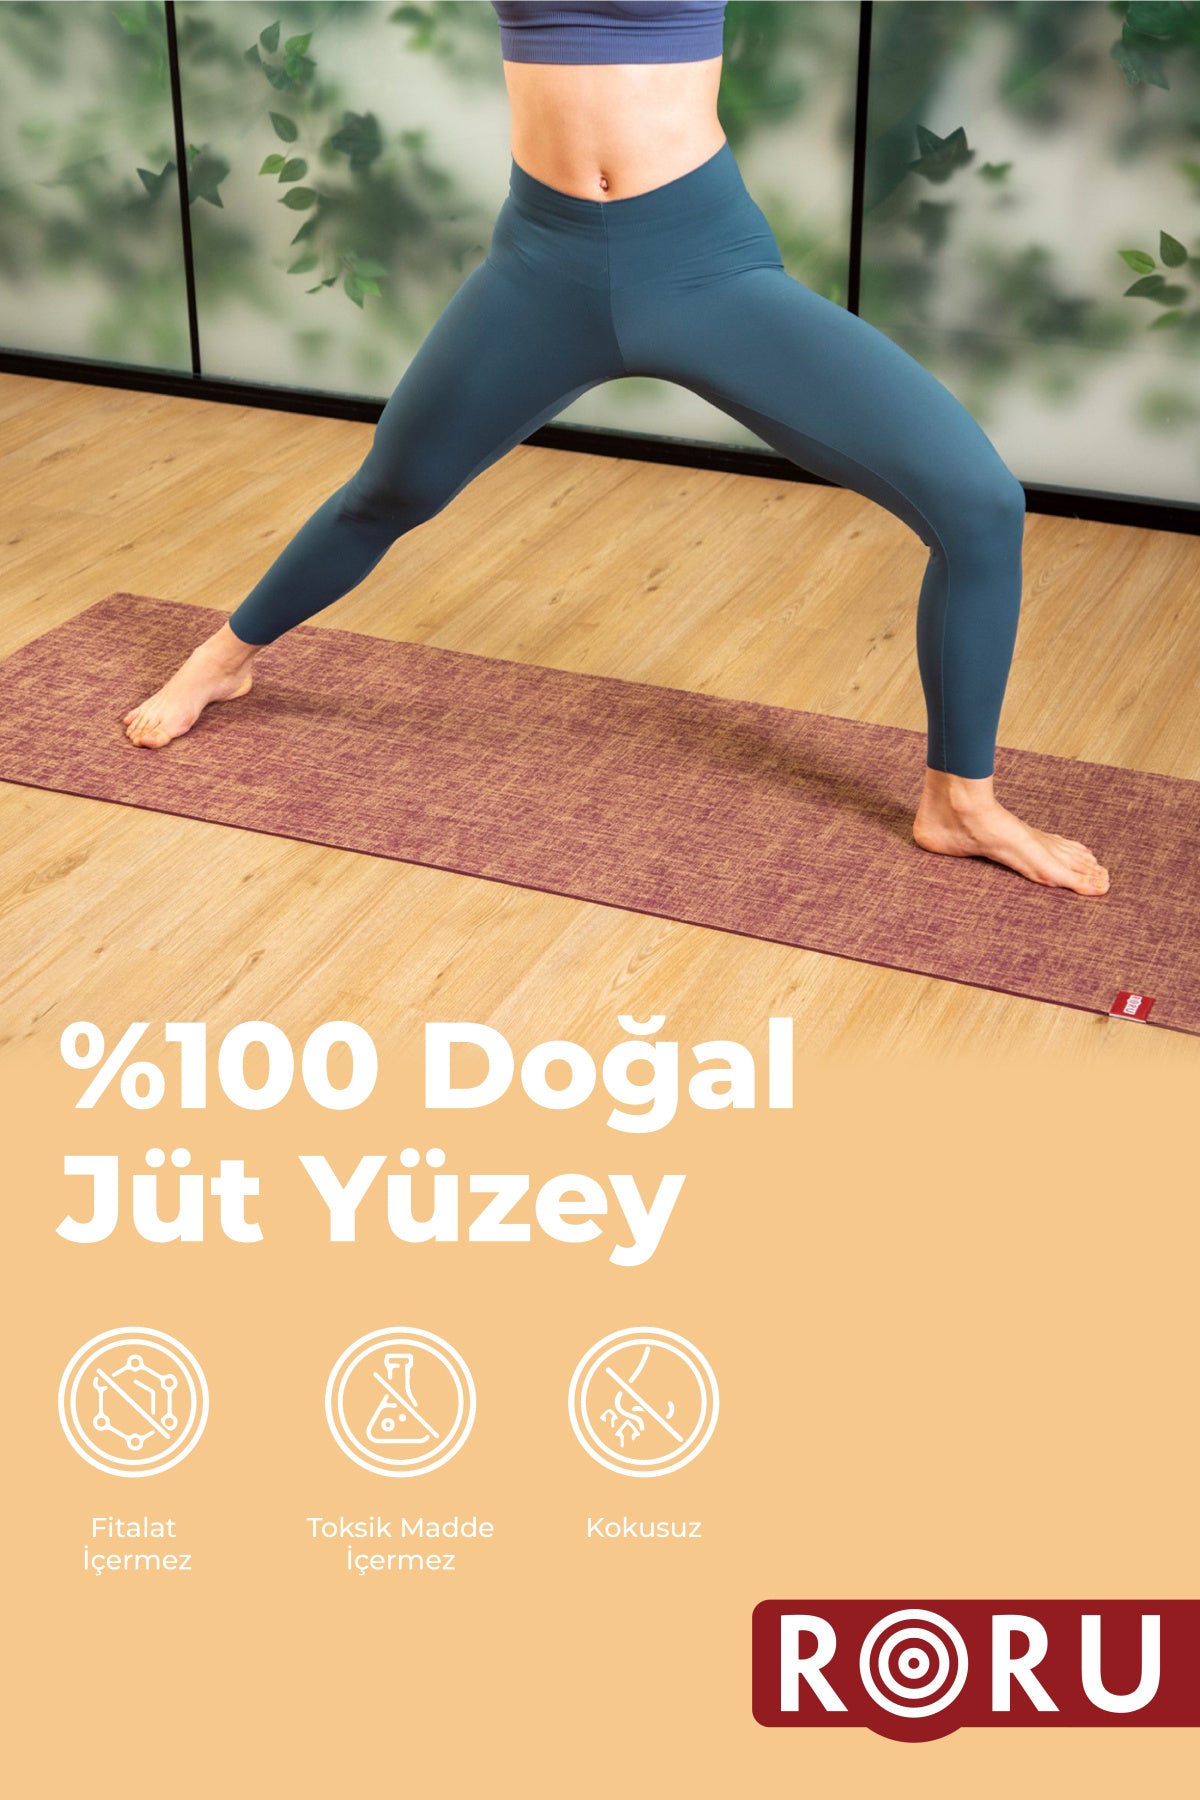 Roru Concept Doğal Jüt Yoga Egzersiz Matı 173 x 61 cm 5 mm Kuru, Az - Orta Terleyen Eller İçin, Bej